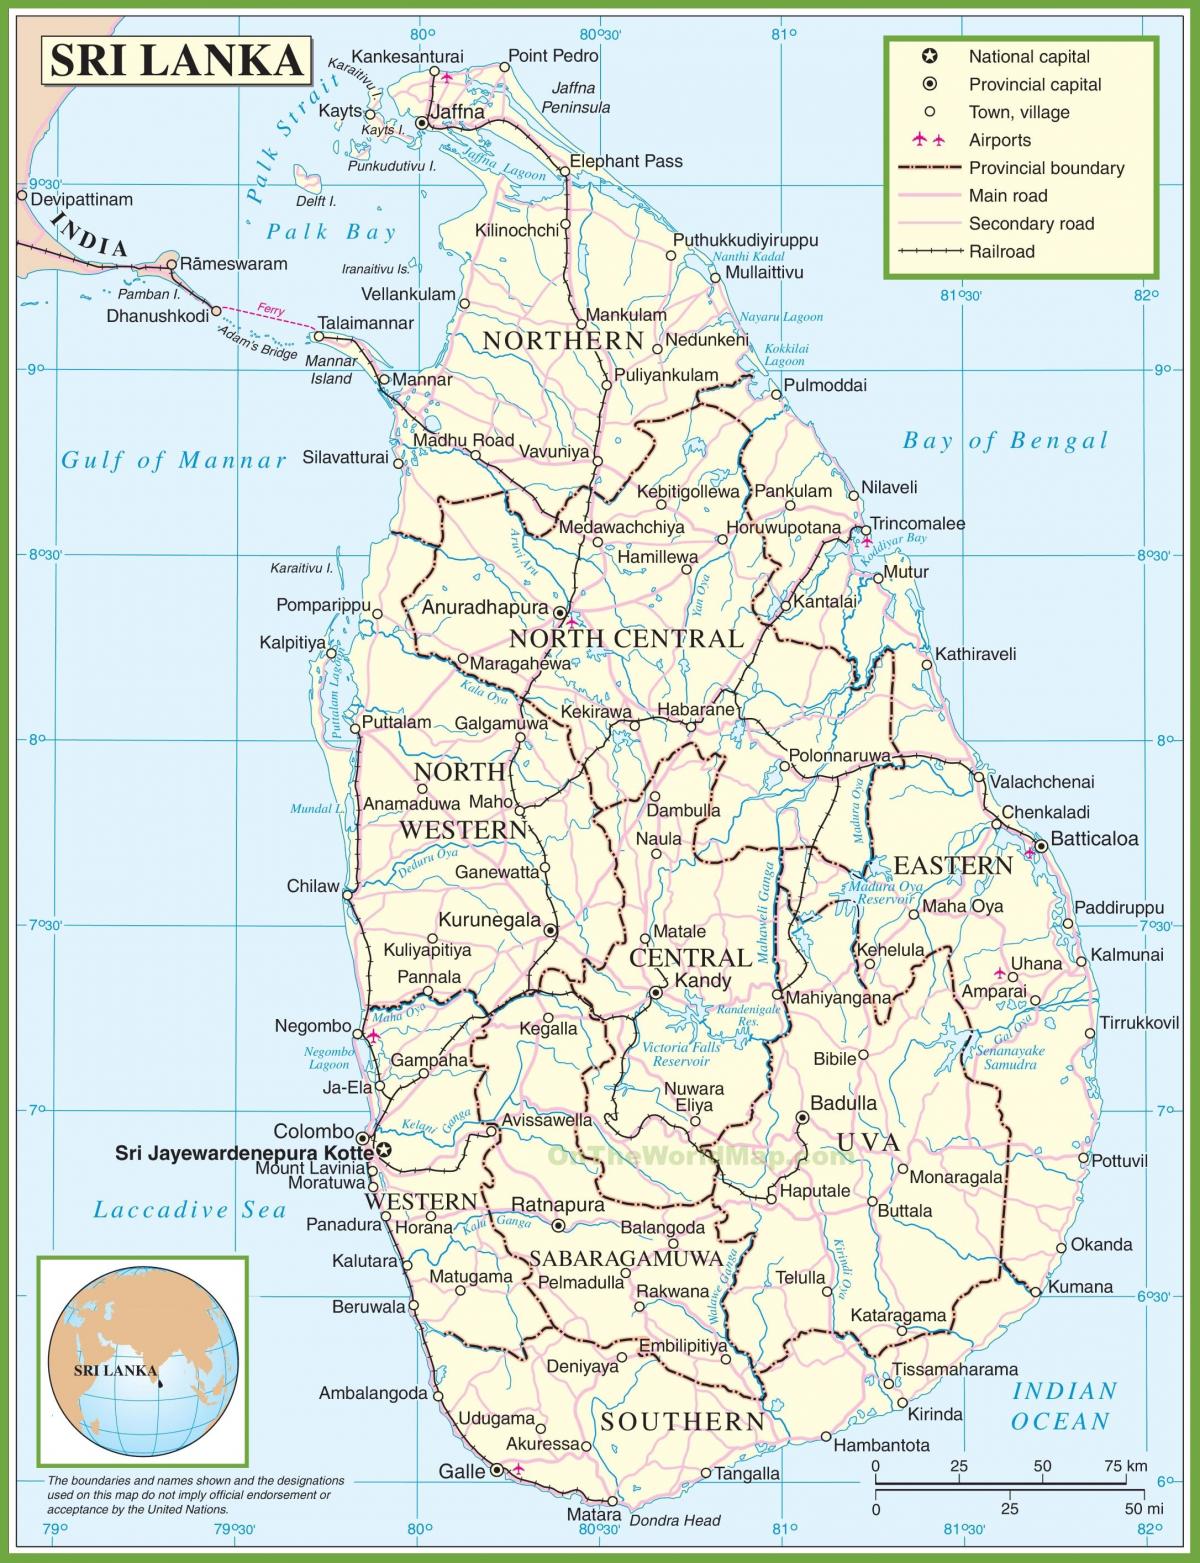 yon kat jeyografik nan Sri Lanka